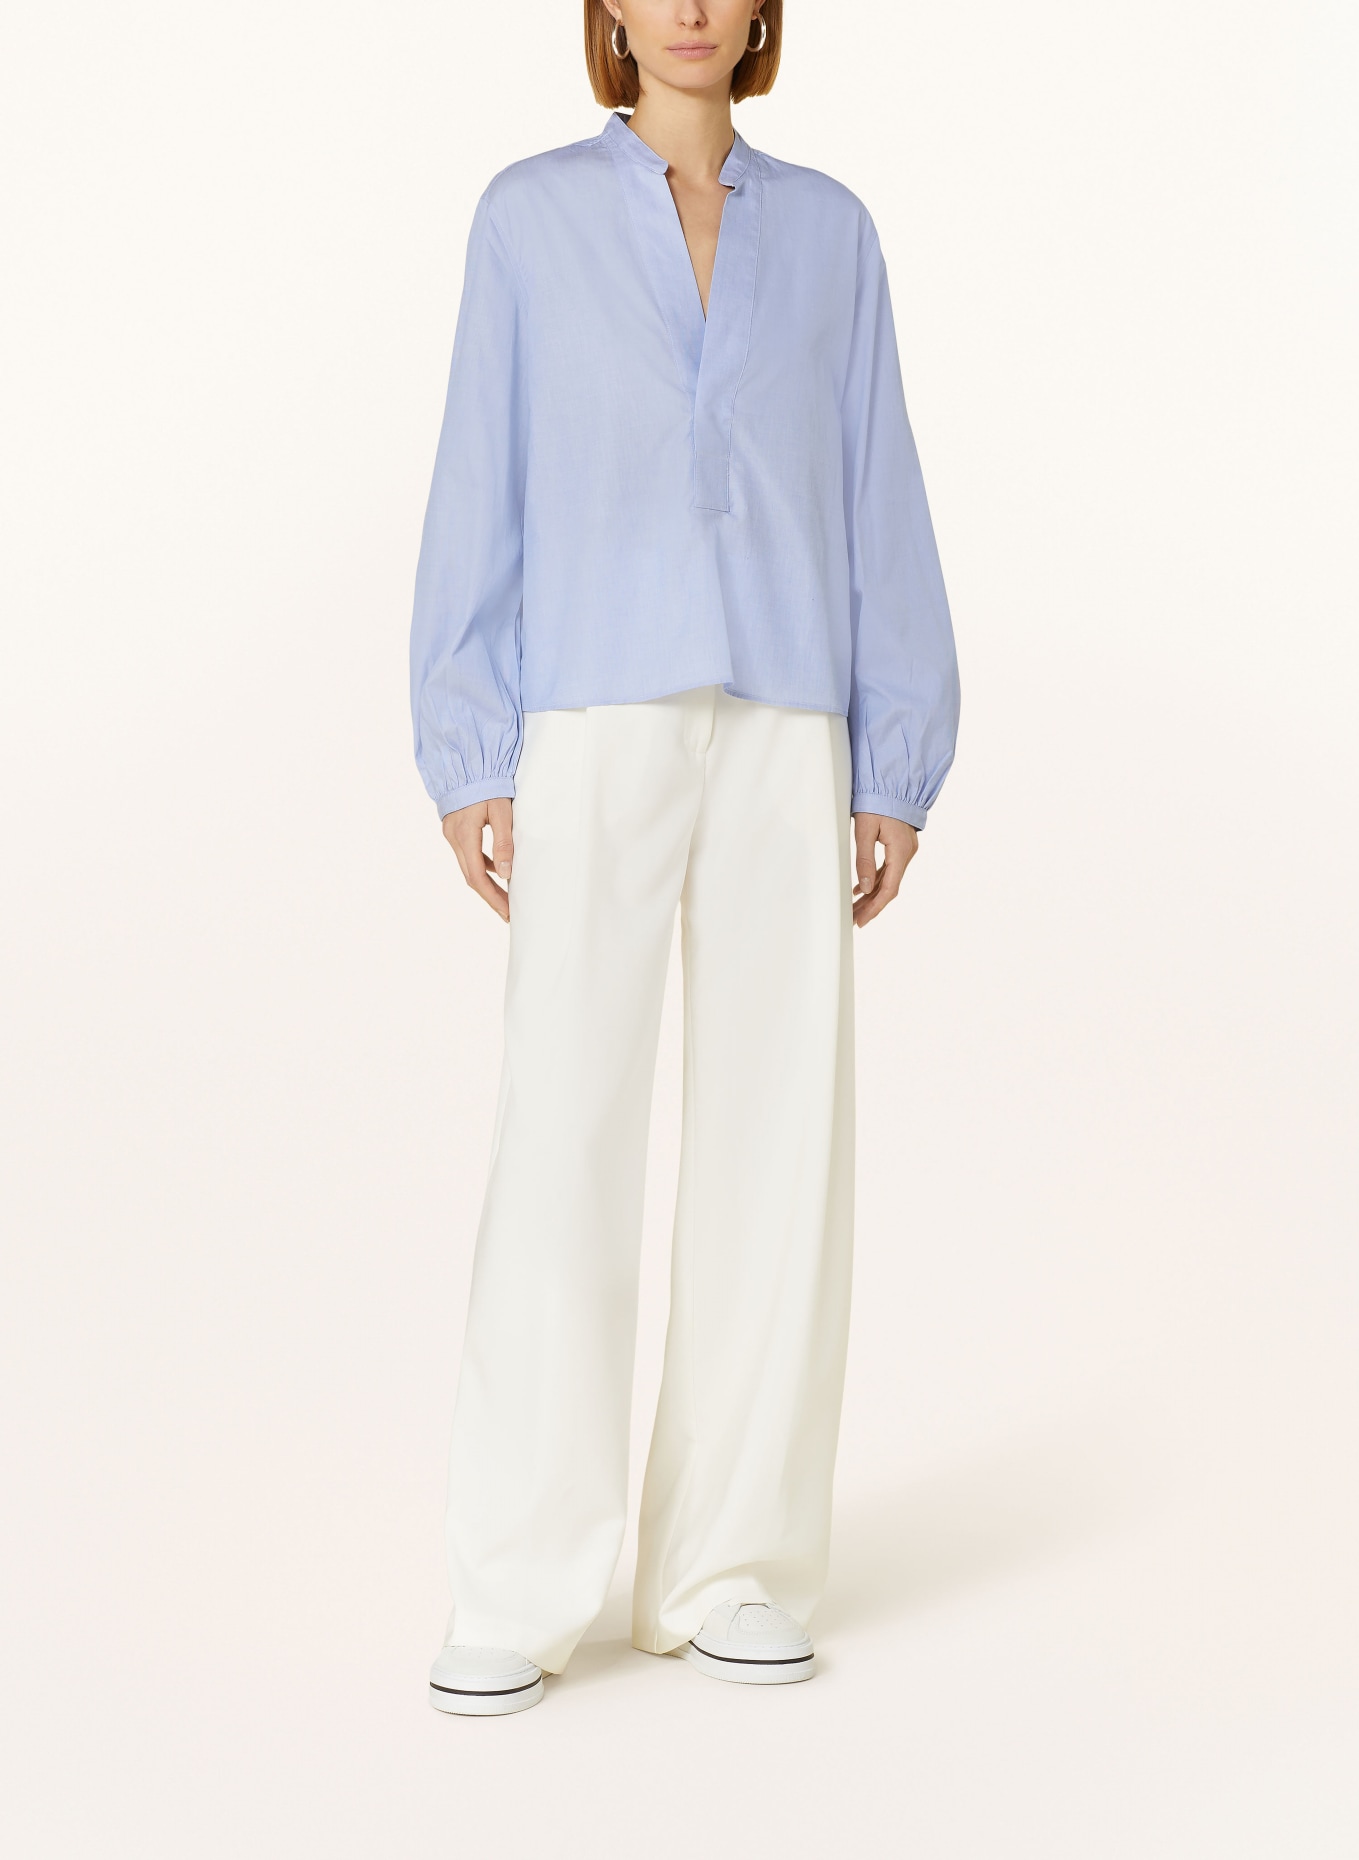 POLO RALPH LAUREN Shirt blouse, Color: LIGHT BLUE (Image 2)